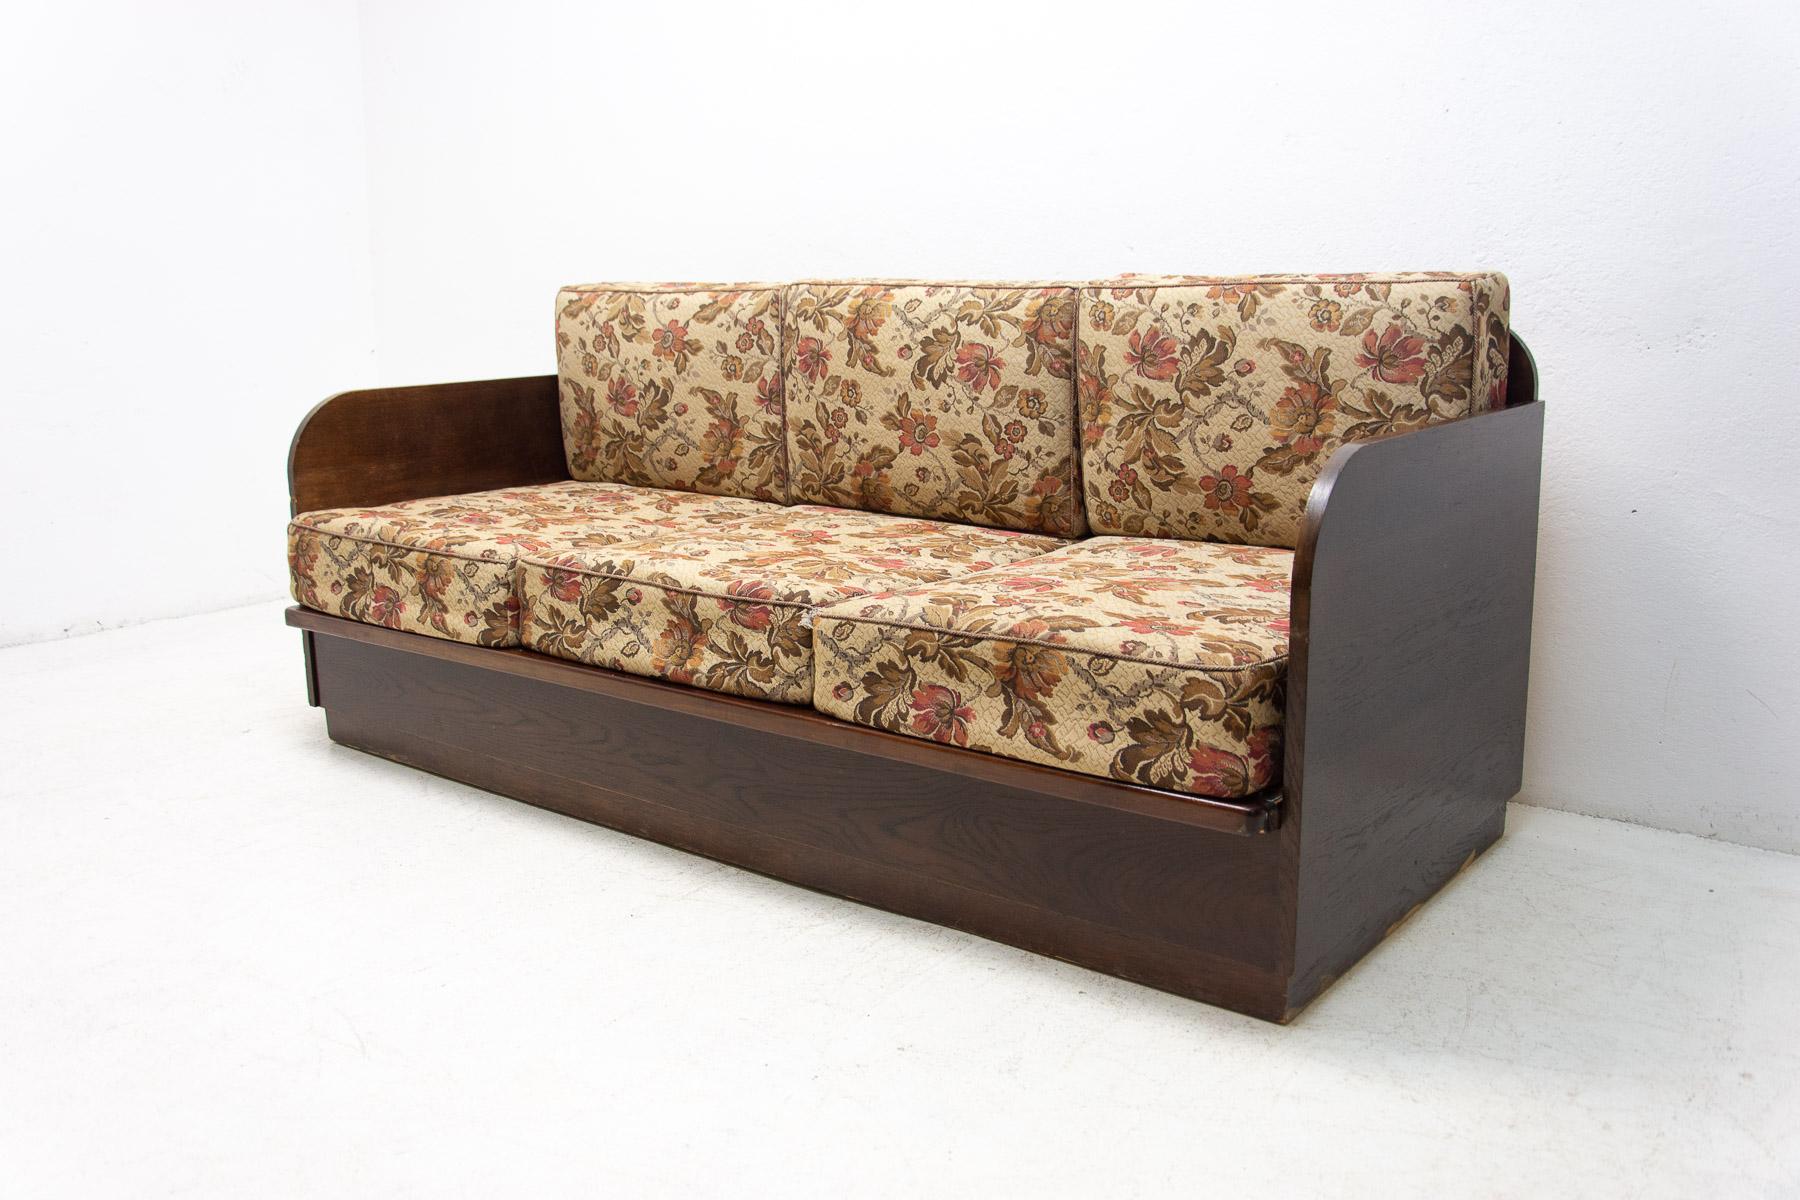 Ce canapé-lit pliant a été fabriqué dans l'ancienne Tchécoslovaquie dans les années 1950. La construction est en bois et elle est plaquée de hêtre teinté foncé.

Dans l'ensemble en bon état Vintage, montrant des signes d'âge et d'utilisation